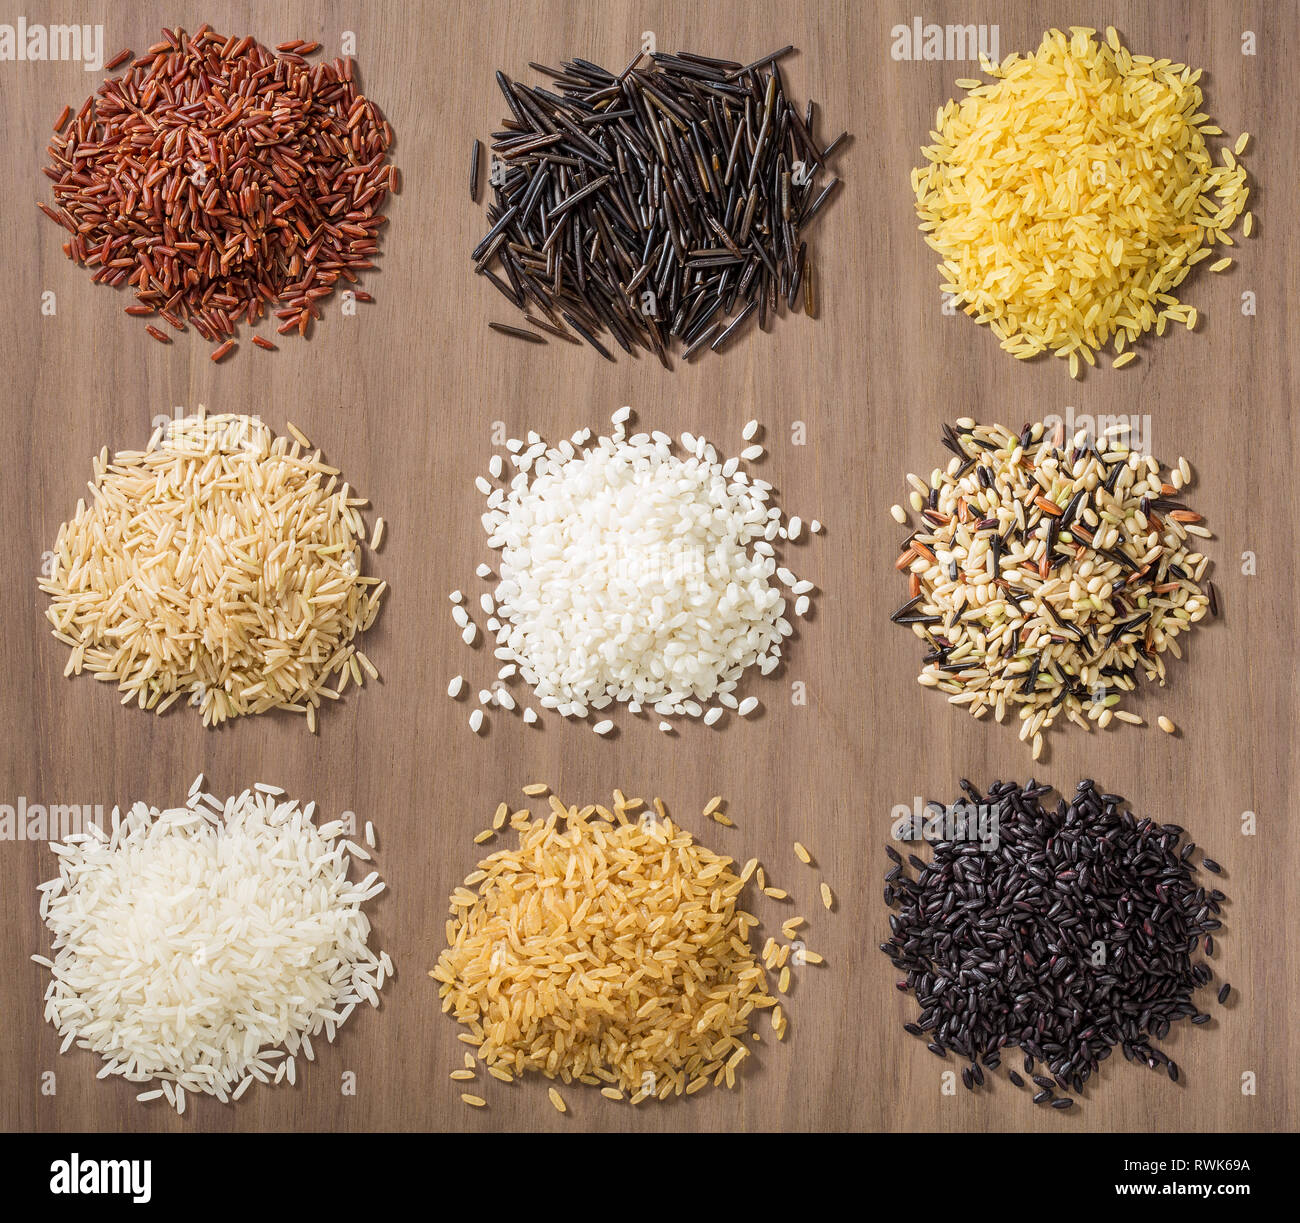 Stapel der verschiedenen Reissorten über eine hölzerne Hintergrund einschließlich Jasmin, basmati, wilder Reis, Risotto und parboiled in Rot, Weiß, Braun und Schwarz Stockfoto